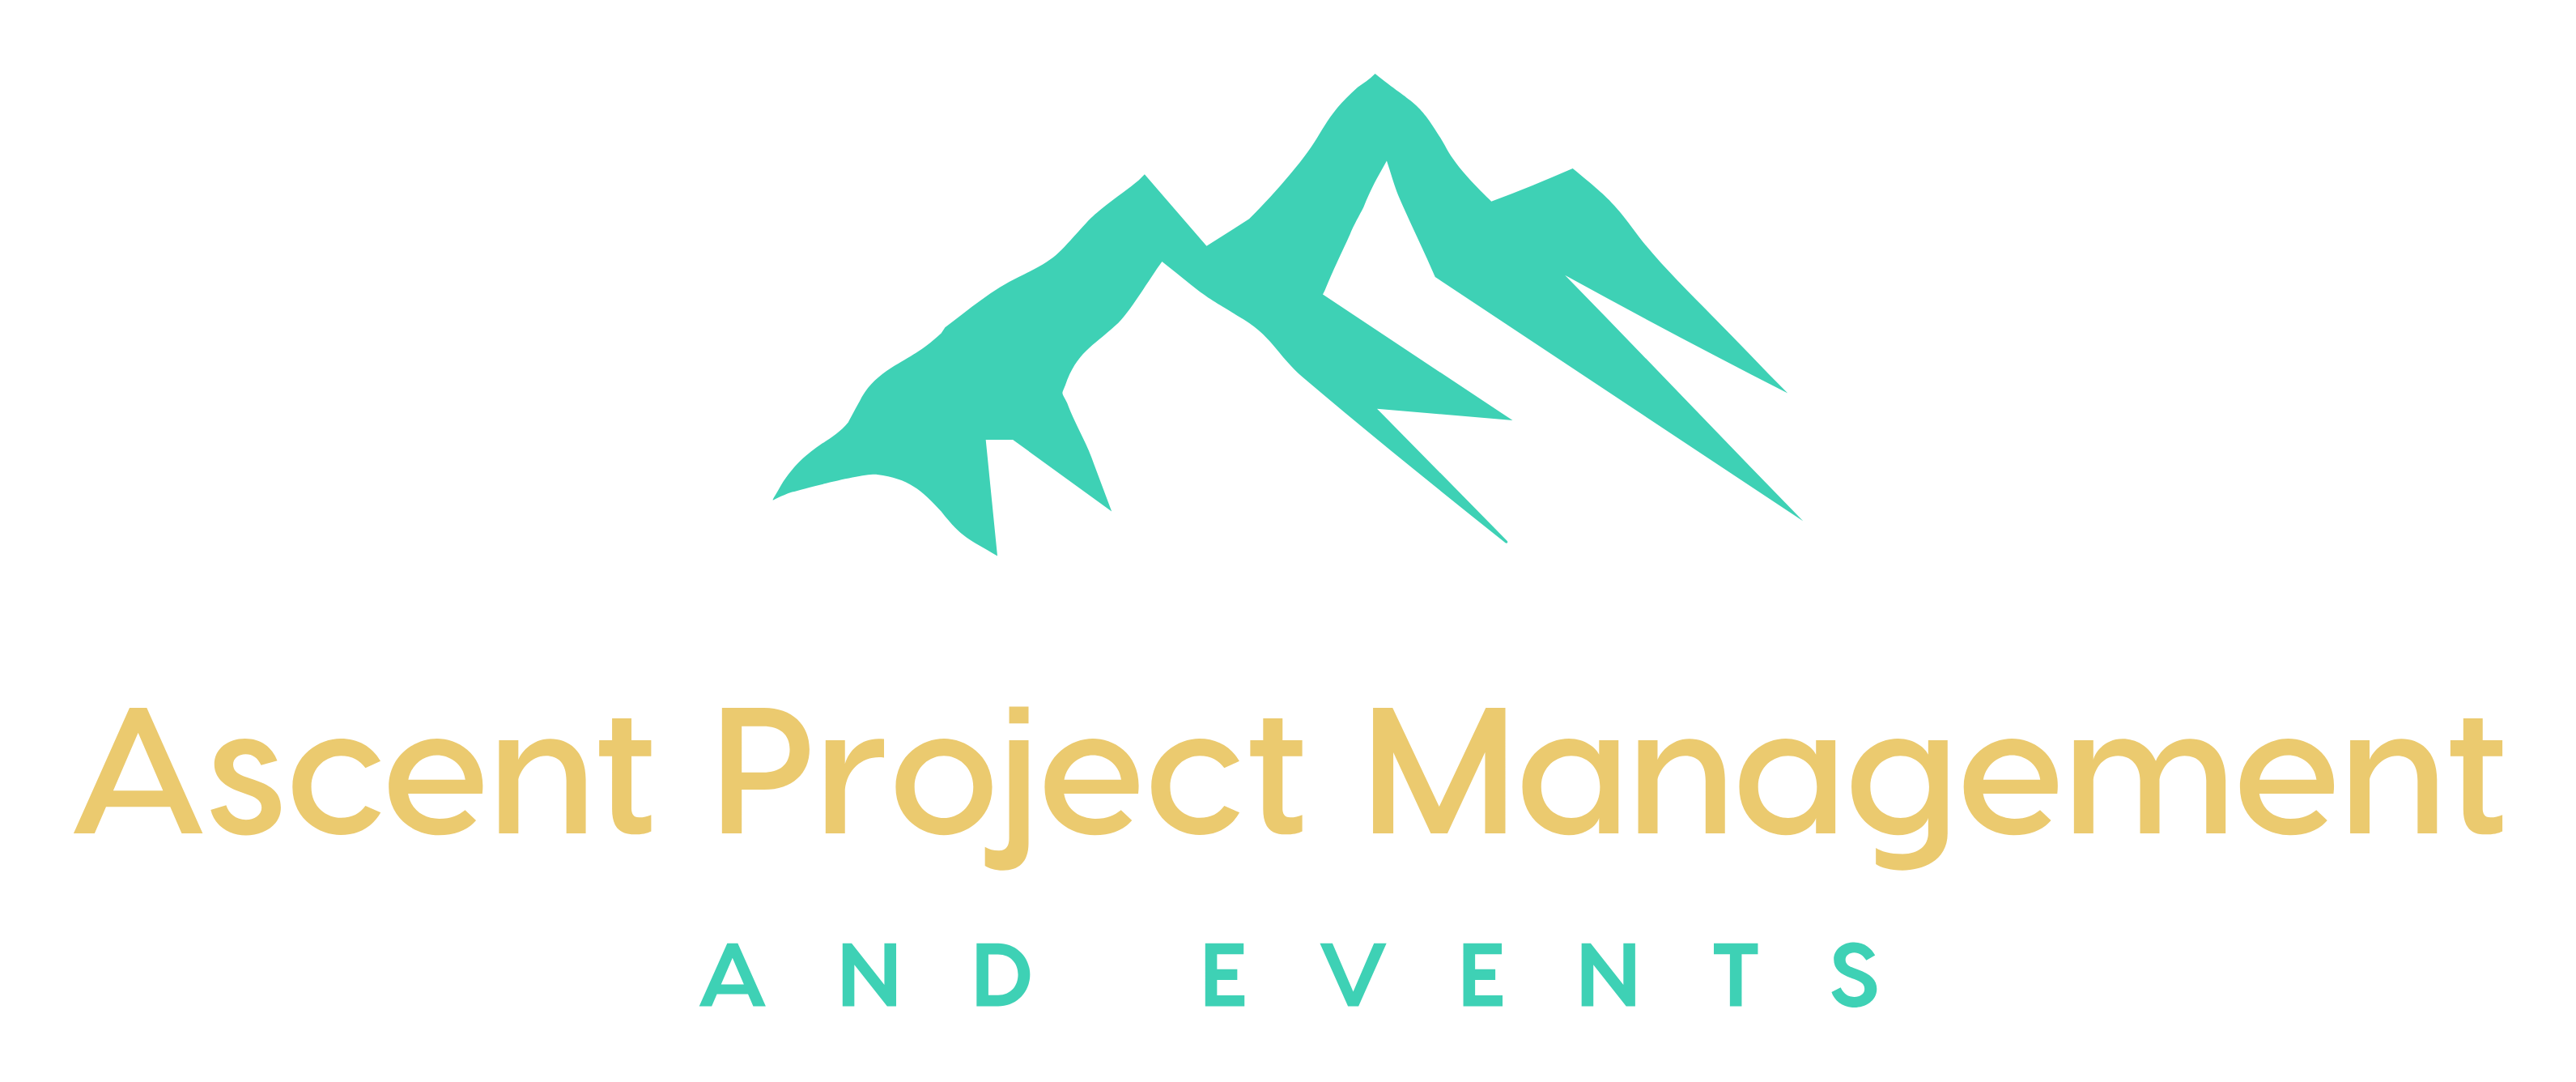 Ascent Project Management Logo